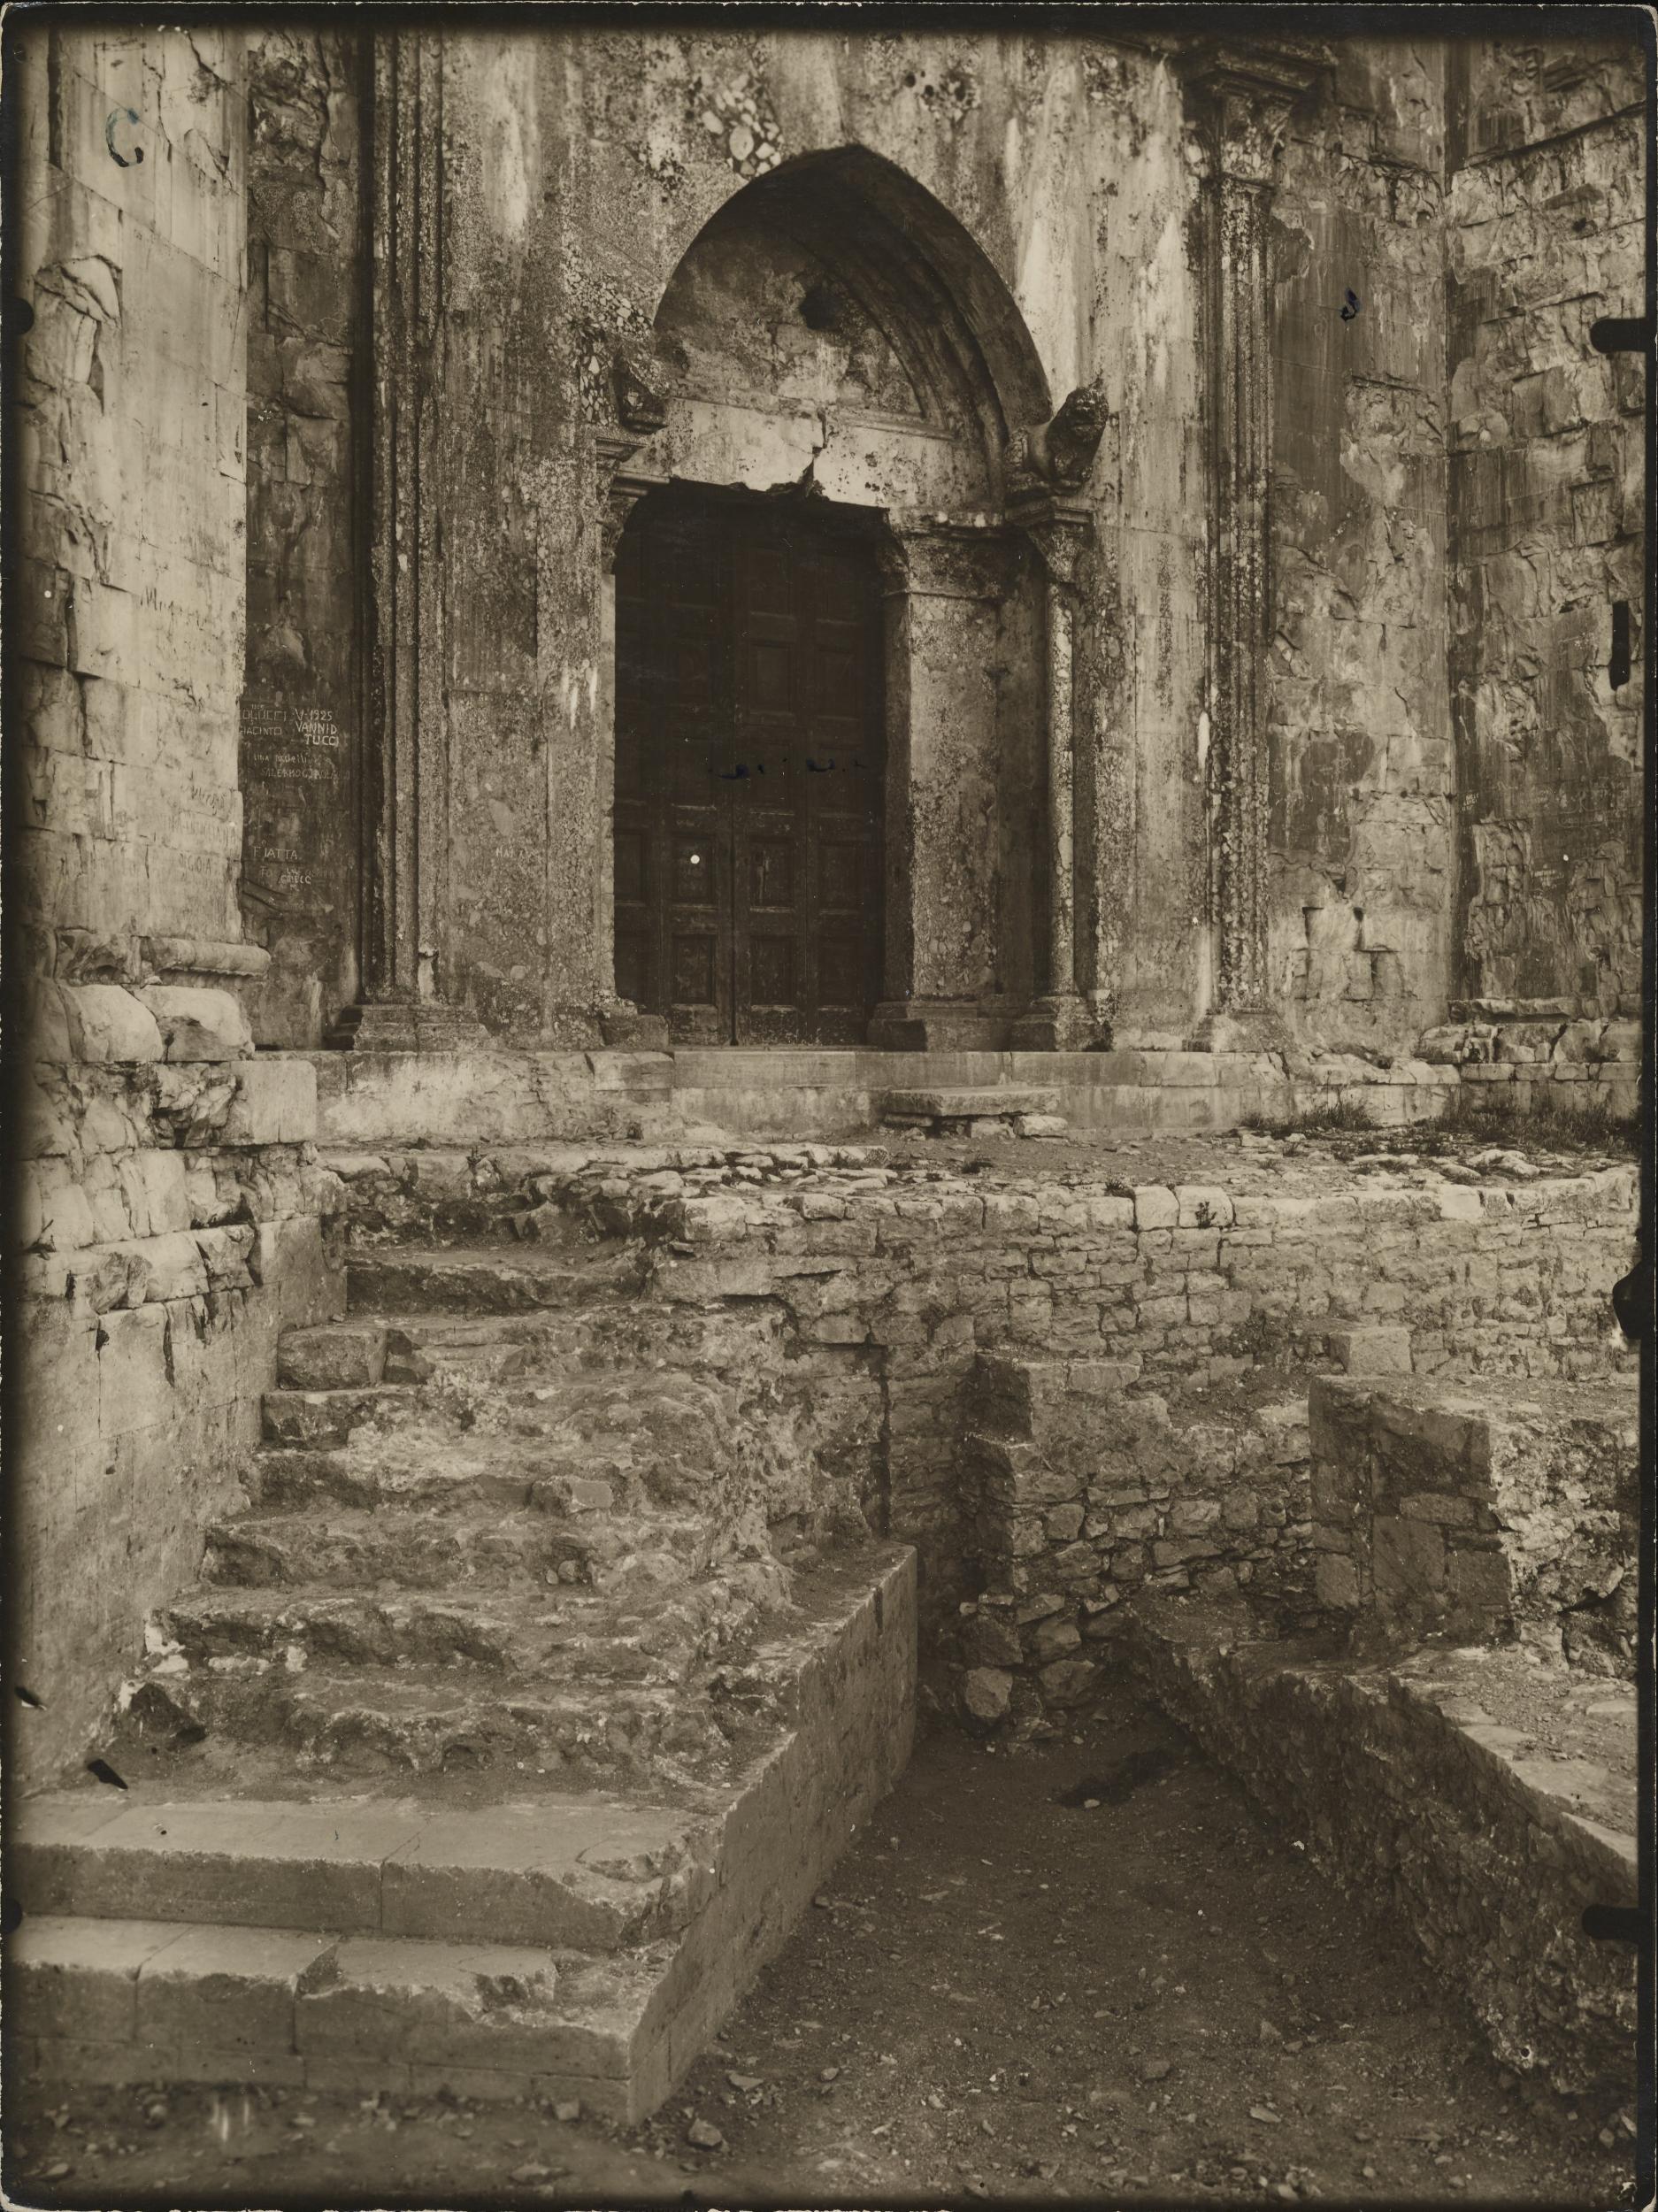 Fotografo non identificato, Andria, Castel del Monte - Prospetto, particolare, 1951-2000, gelatina ai sali d'argento/carta, MPI6016724